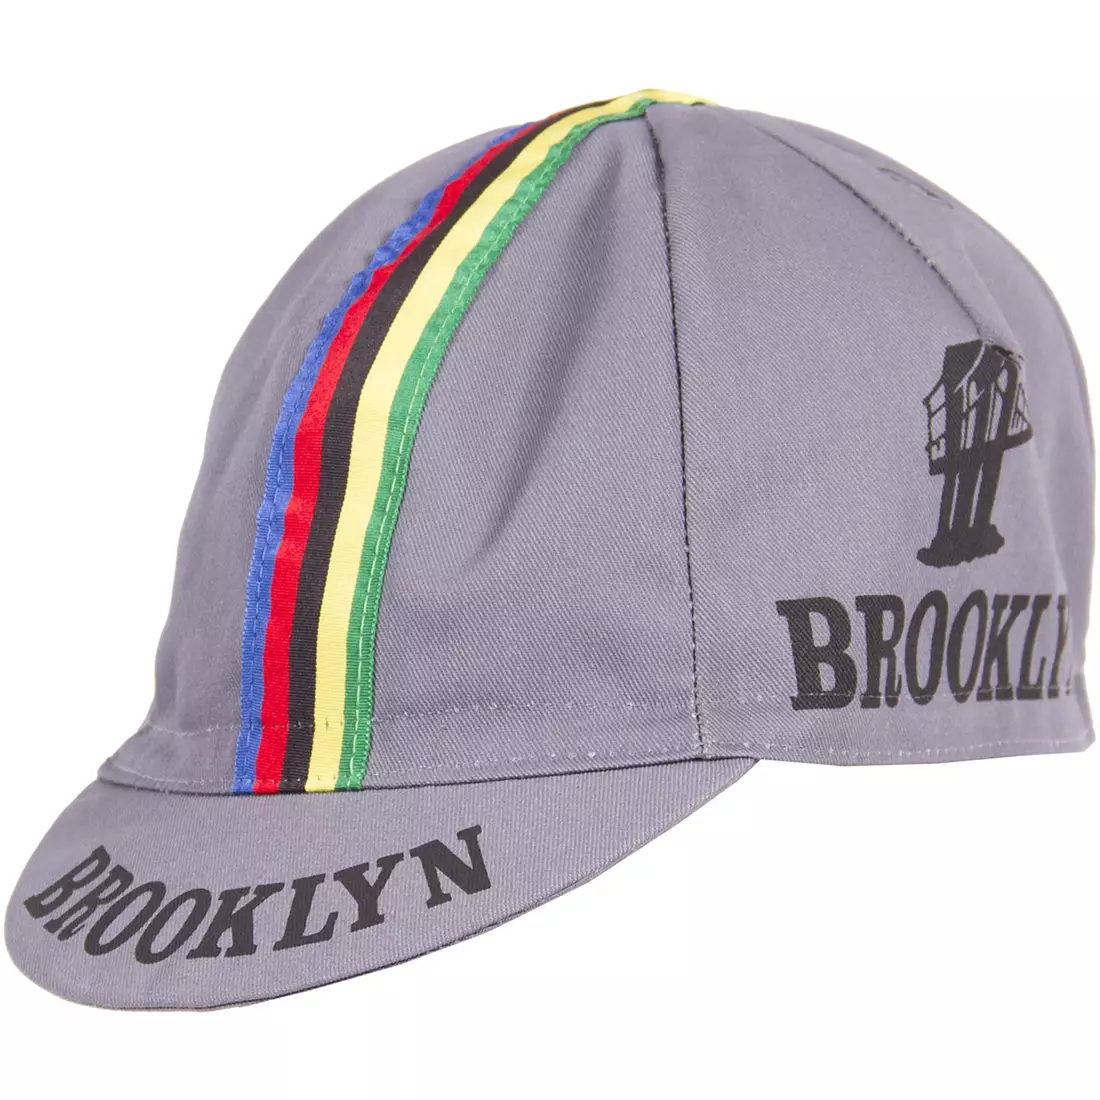 Cyklistická čiapka GIORDANA SS18 - Brooklyn - šedá s pásikovou páskou GI-S6-COCA-BROK-GRAY jedna veľ.